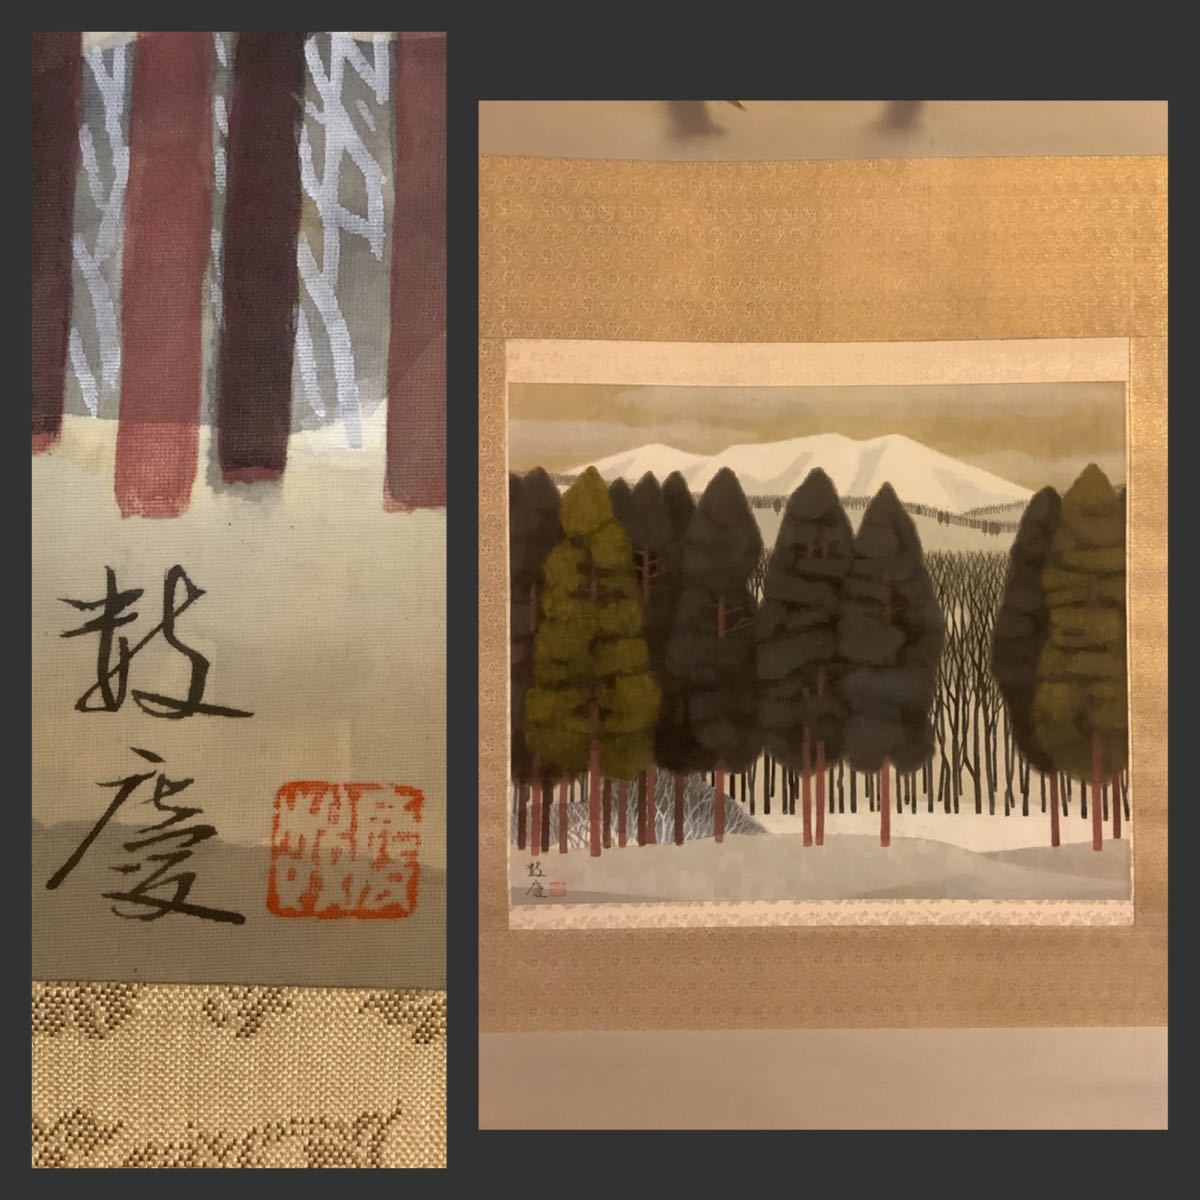 [कॉपी] हैंगिंग स्क्रॉल Fe652BL [काज़ुकेई हिगासा स्नो पीक] रंगीन रेशम की किताब बॉक्स में लिखी गई/जापानी पेंटिंग लैंडस्केप पेंटिंग जापान बिजुत्सुइन डौजिन लैंडस्केप पेंटिंग, चित्रकारी, जापानी पेंटिंग, परिदृश्य, फुगेत्सु